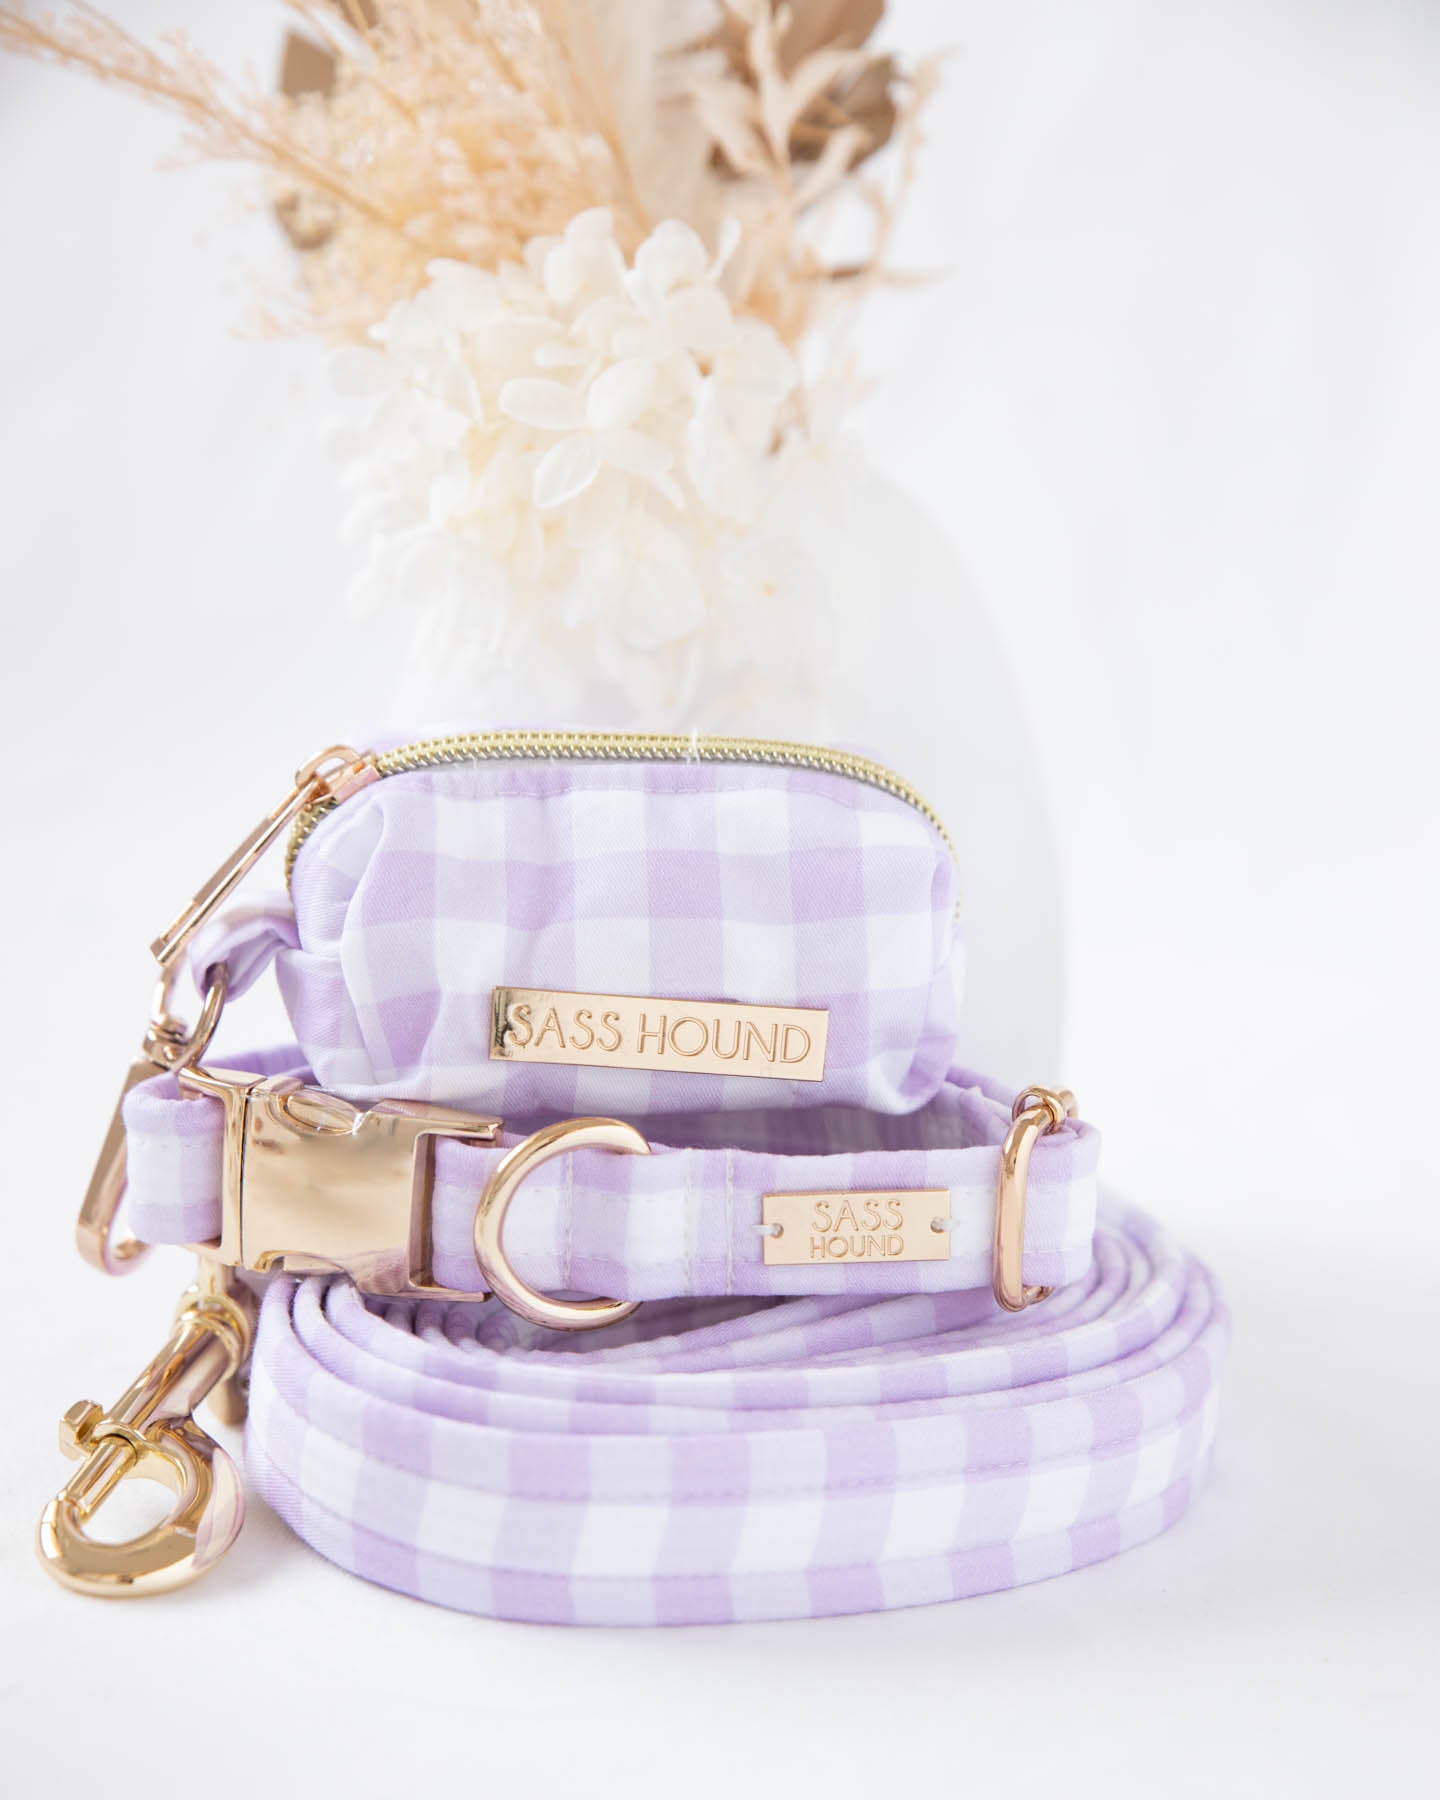 Lavender Dog Waste bag holder